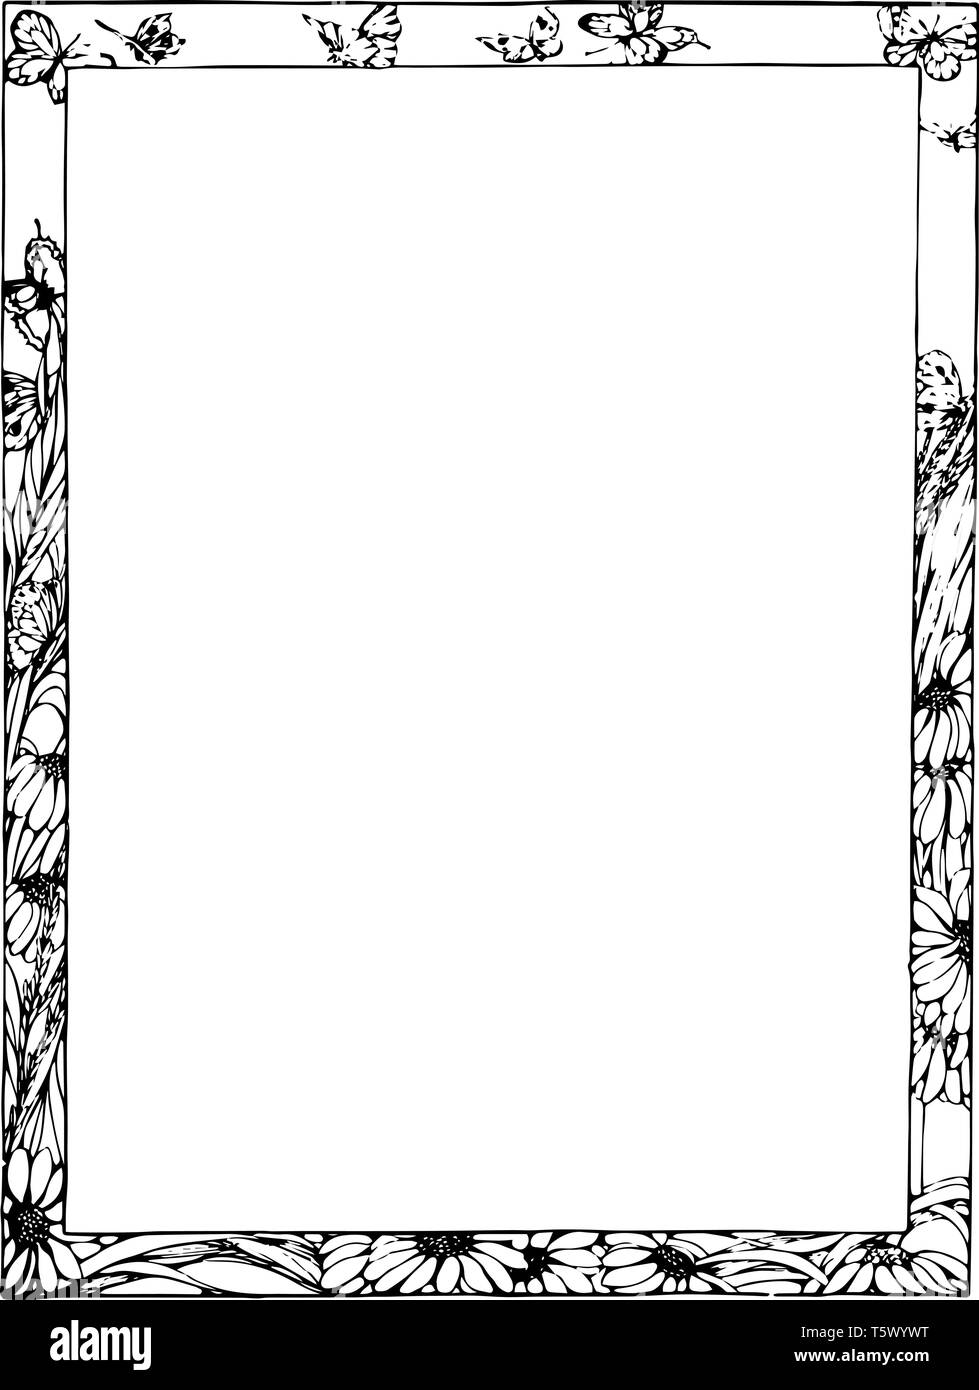 simple black page border designs